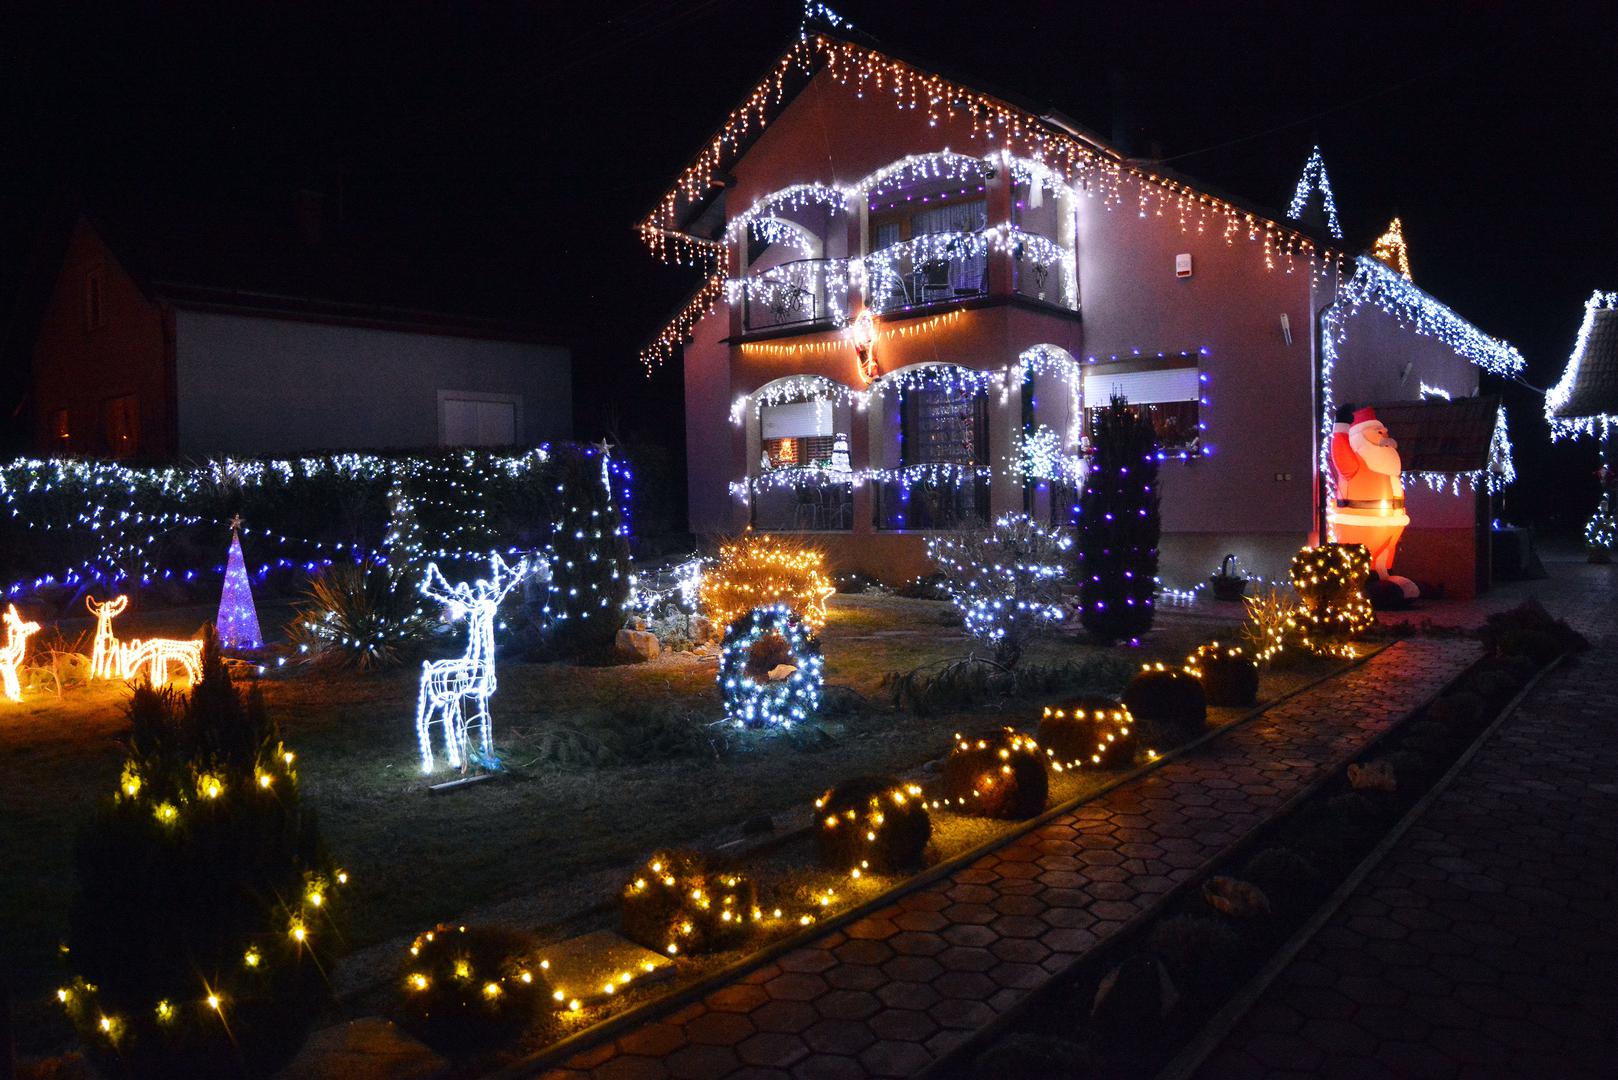 Svakog Božića svjedočimo impresivnim blagdanskim vizualima duž Hrvatske. Nakon božićne bajke obitelji Salaj u Čazmi, još jedna obitelj se pobrinula svojim blagdanskim ukrasima uljepšati cijeli prostor Trnjana u Brodsko Posavskoj županiji, a rezultat je i više nego impresivan. Pogledajte raskošnu božićnu bajku obitelji Dujak osvijetljenu tisućama lampica.